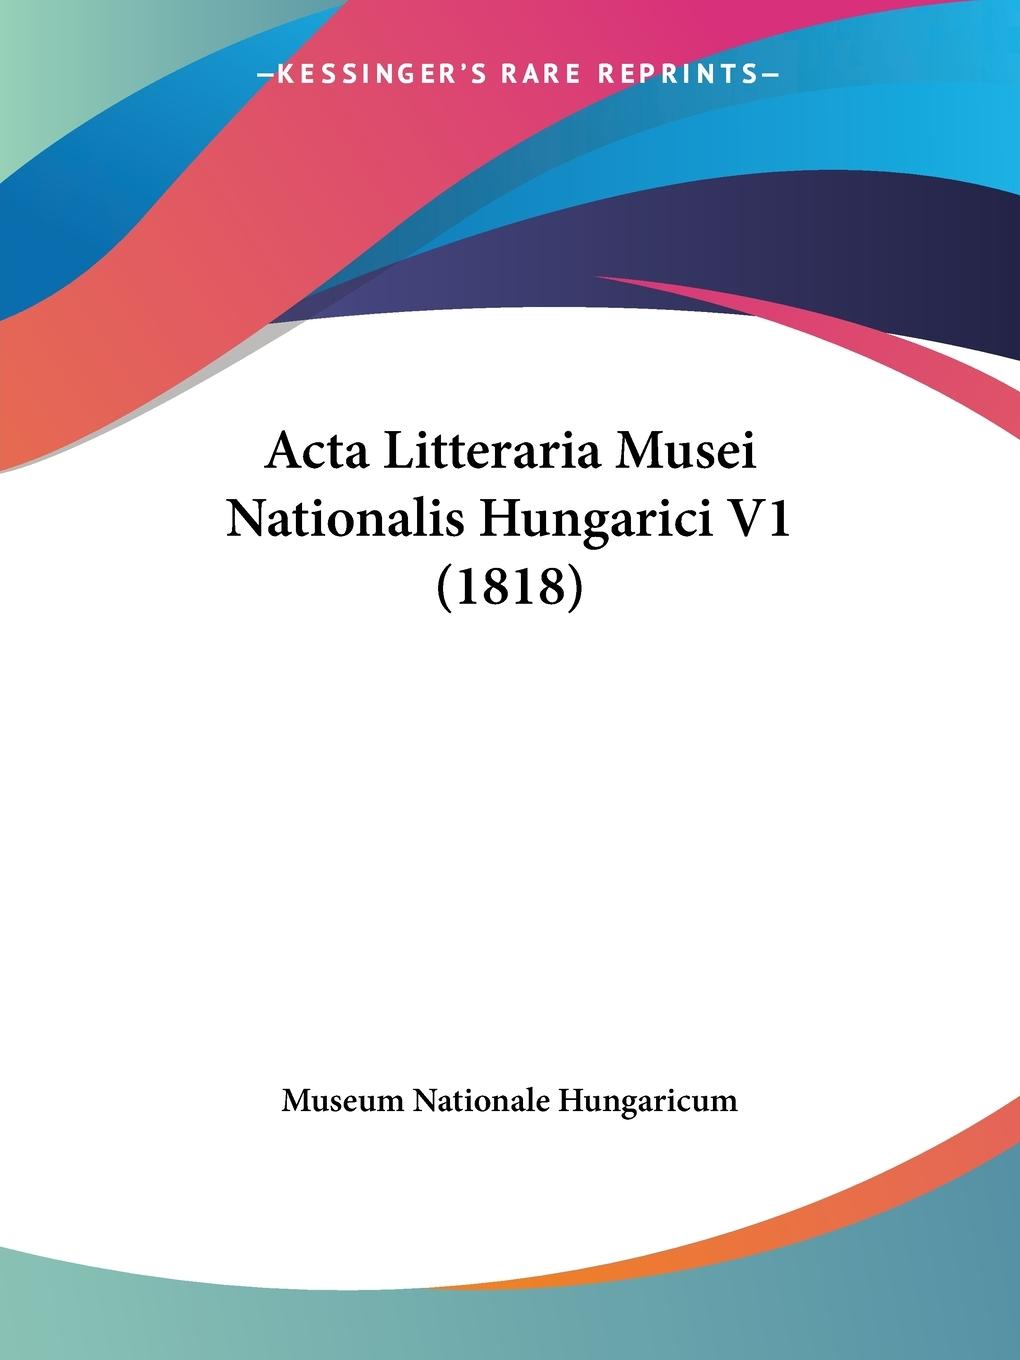 Acta Litteraria Musei Nationalis Hungarici V1 (1818) - Museum Nationale Hungaricum